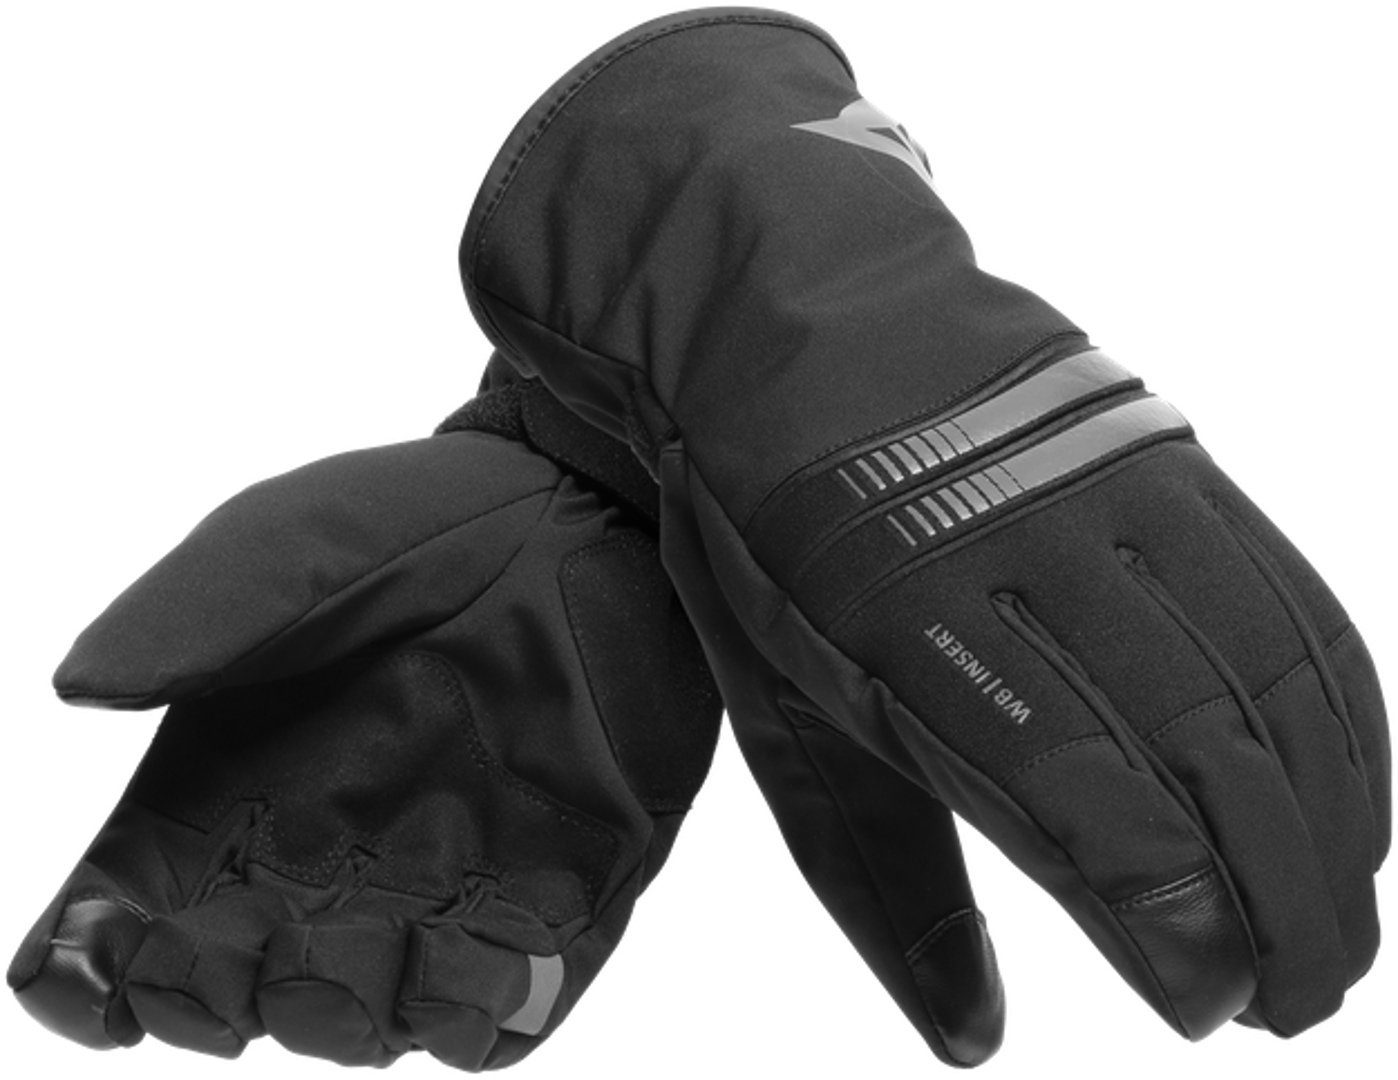 D-Dry Handschuhe Black/Anthracite 3 Plaza Dainese Motorrad Motorradhandschuhe